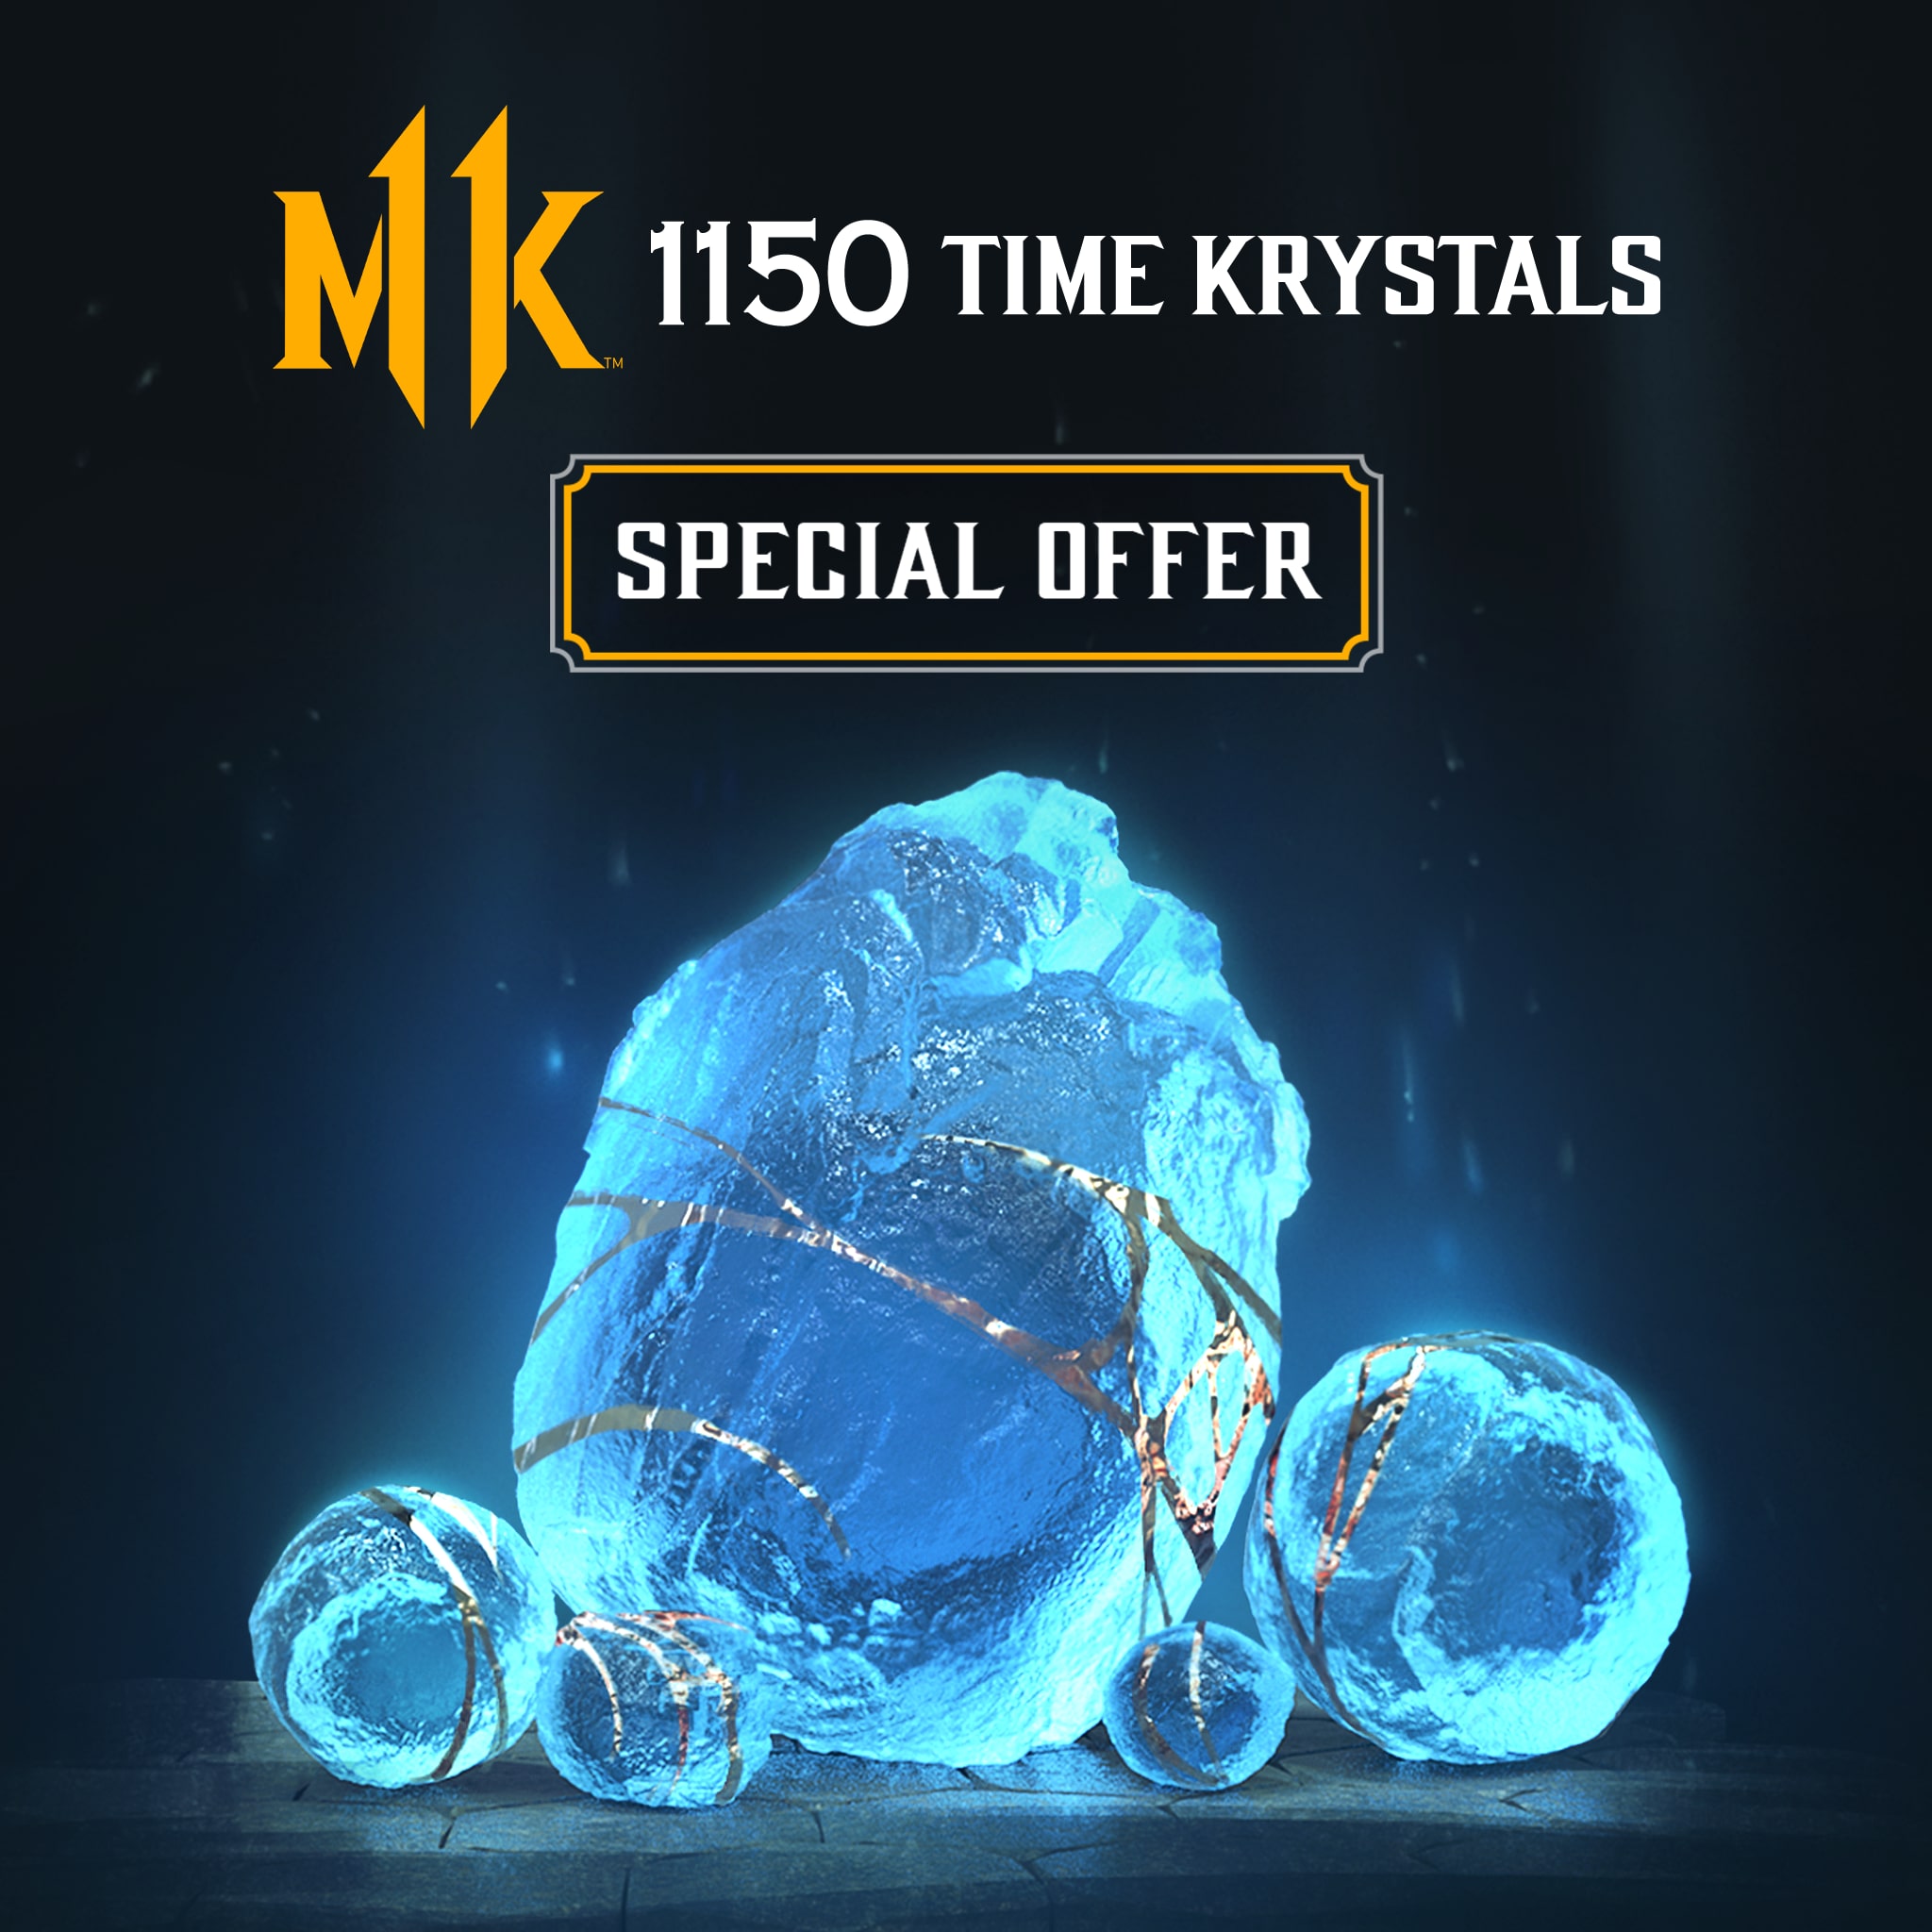 Oferta especial única: 1150 Kristales del Tiempo